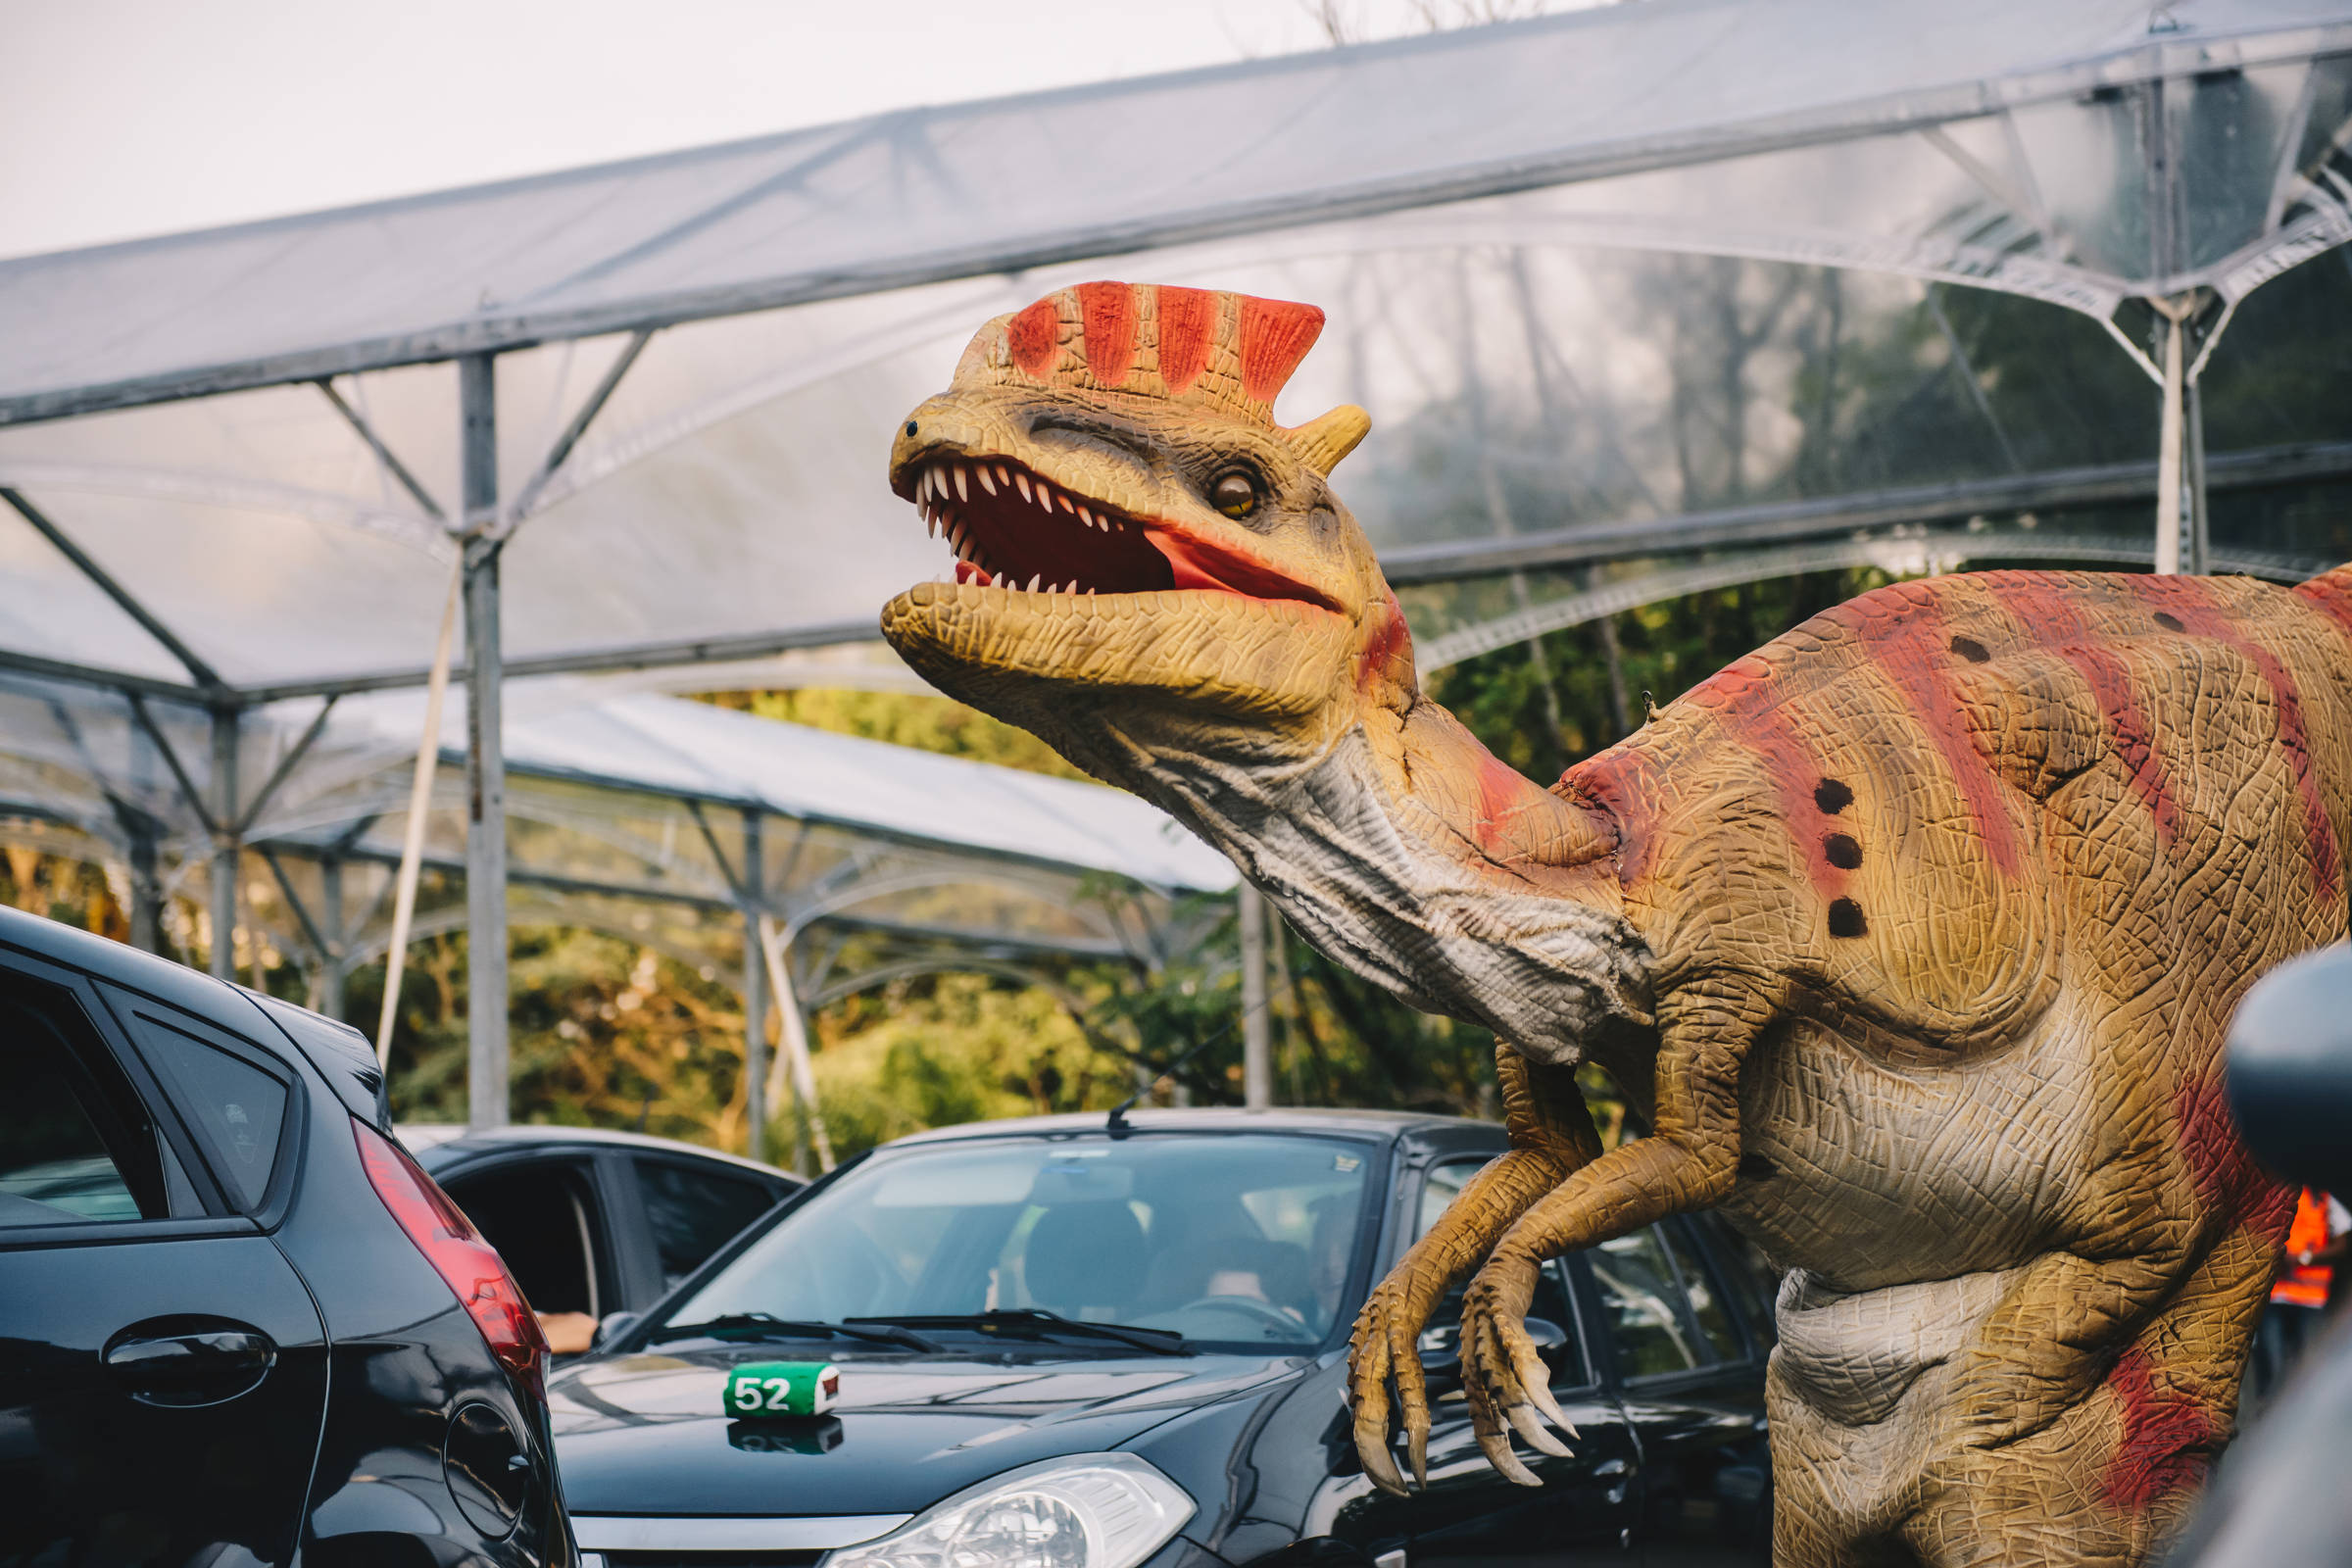 Safári de dinossauros robôs recria 'Jurassic Park' ao ar livre em São Paulo  - 30/09/2020 - Passeios - Guia Folha